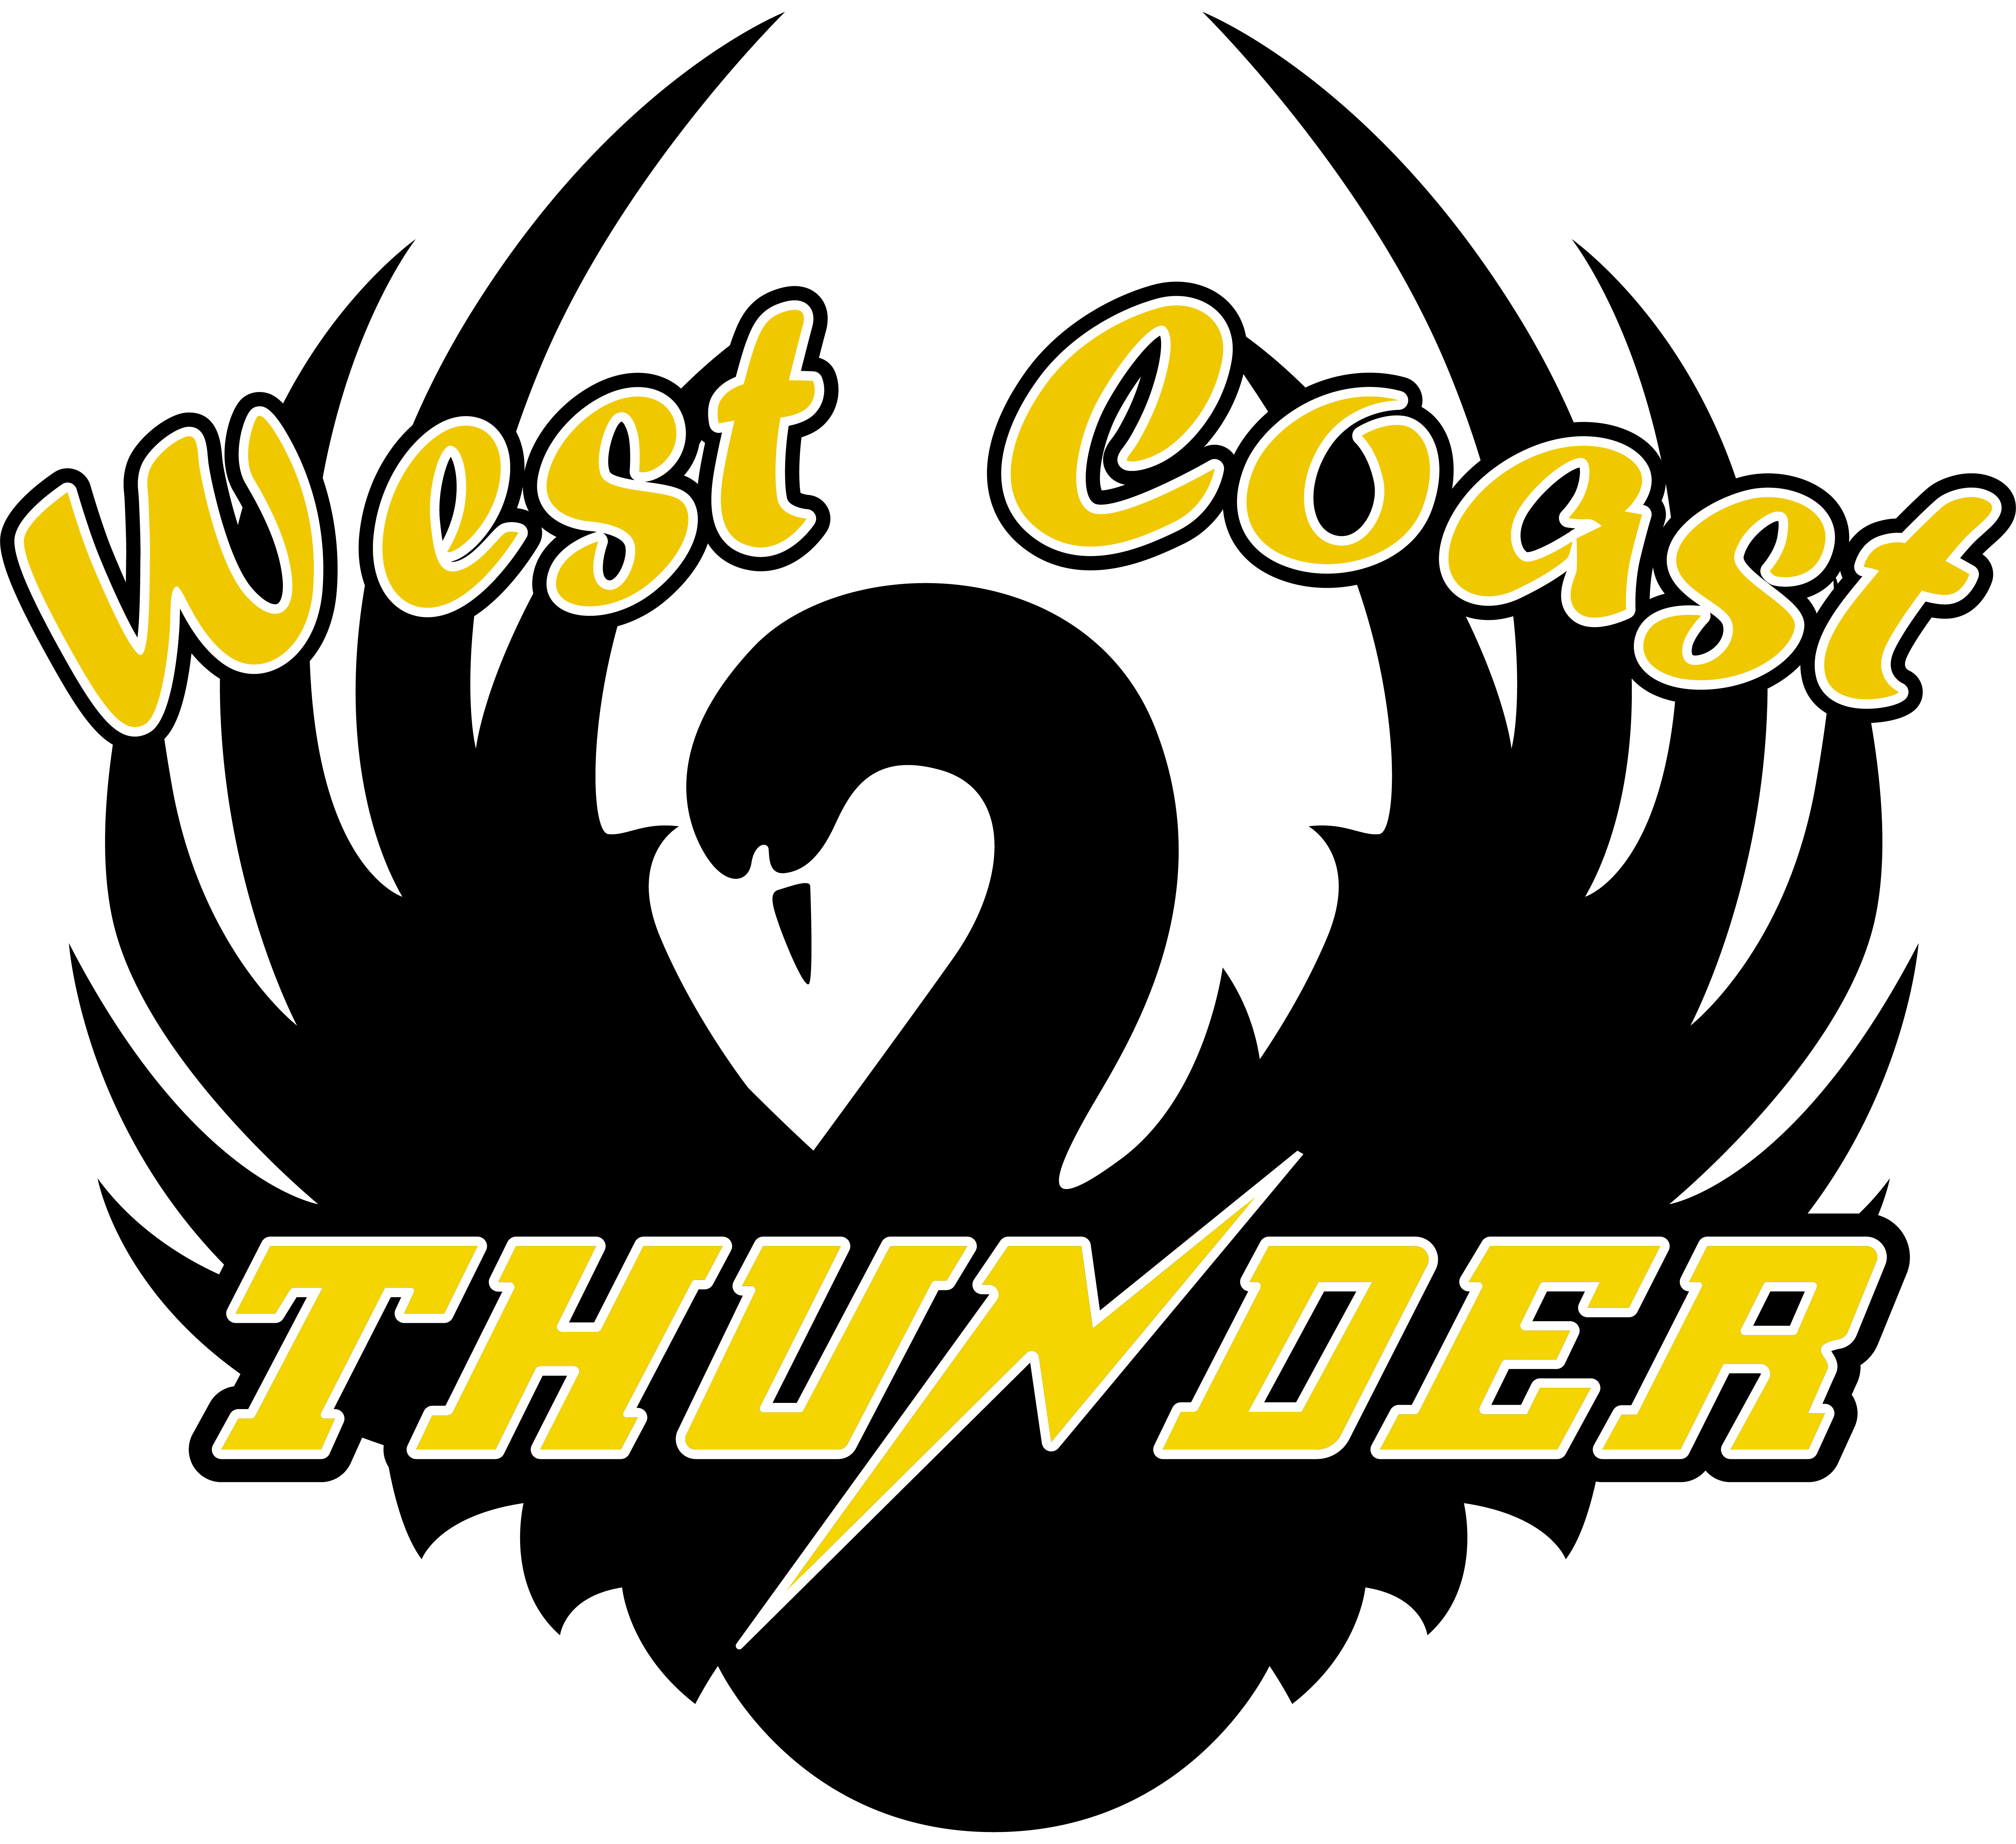 West Coast Mens & Womens Mixed Netball Association